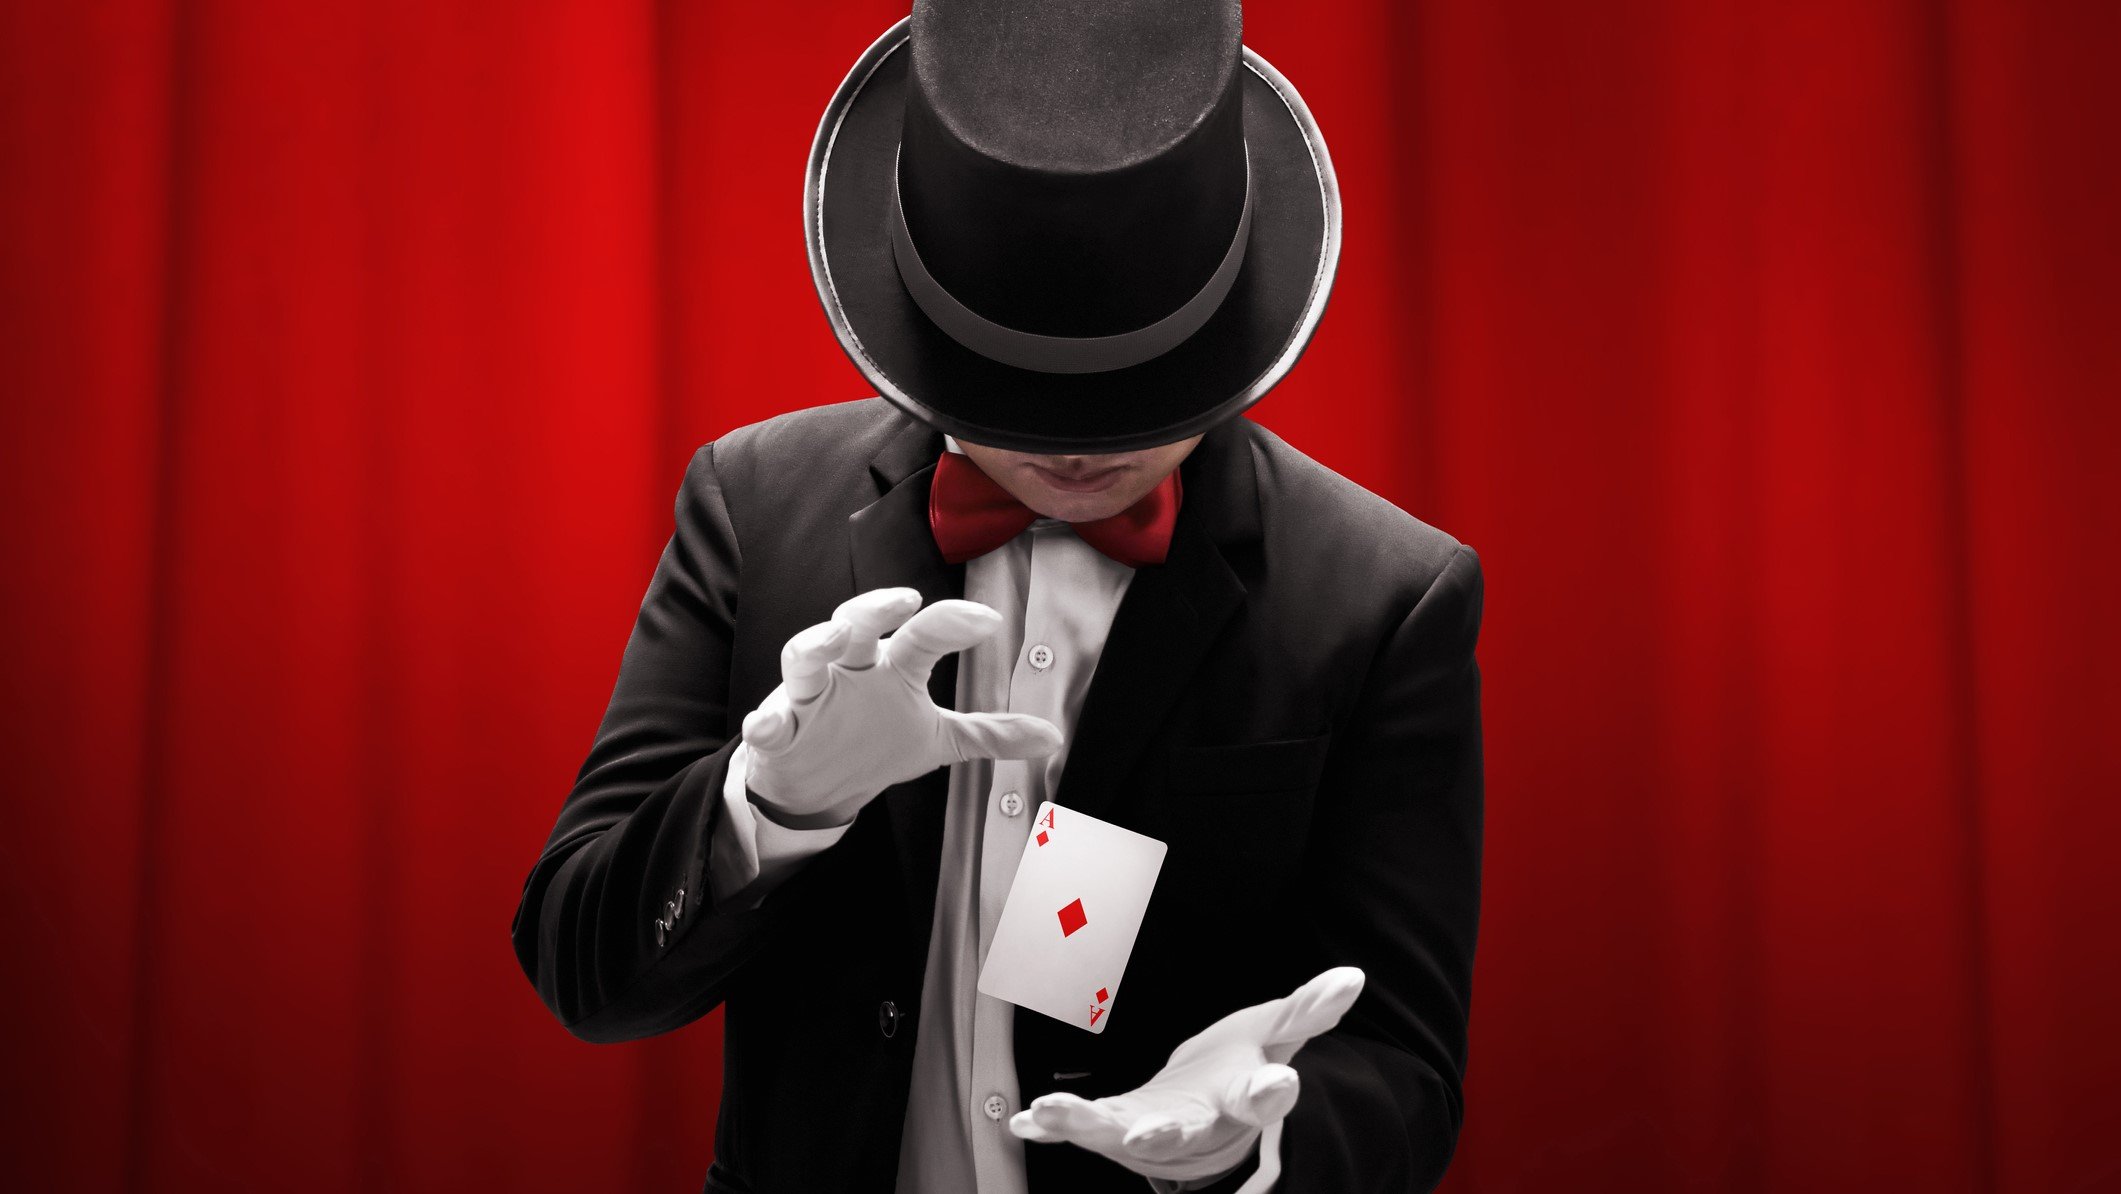 Magic magician